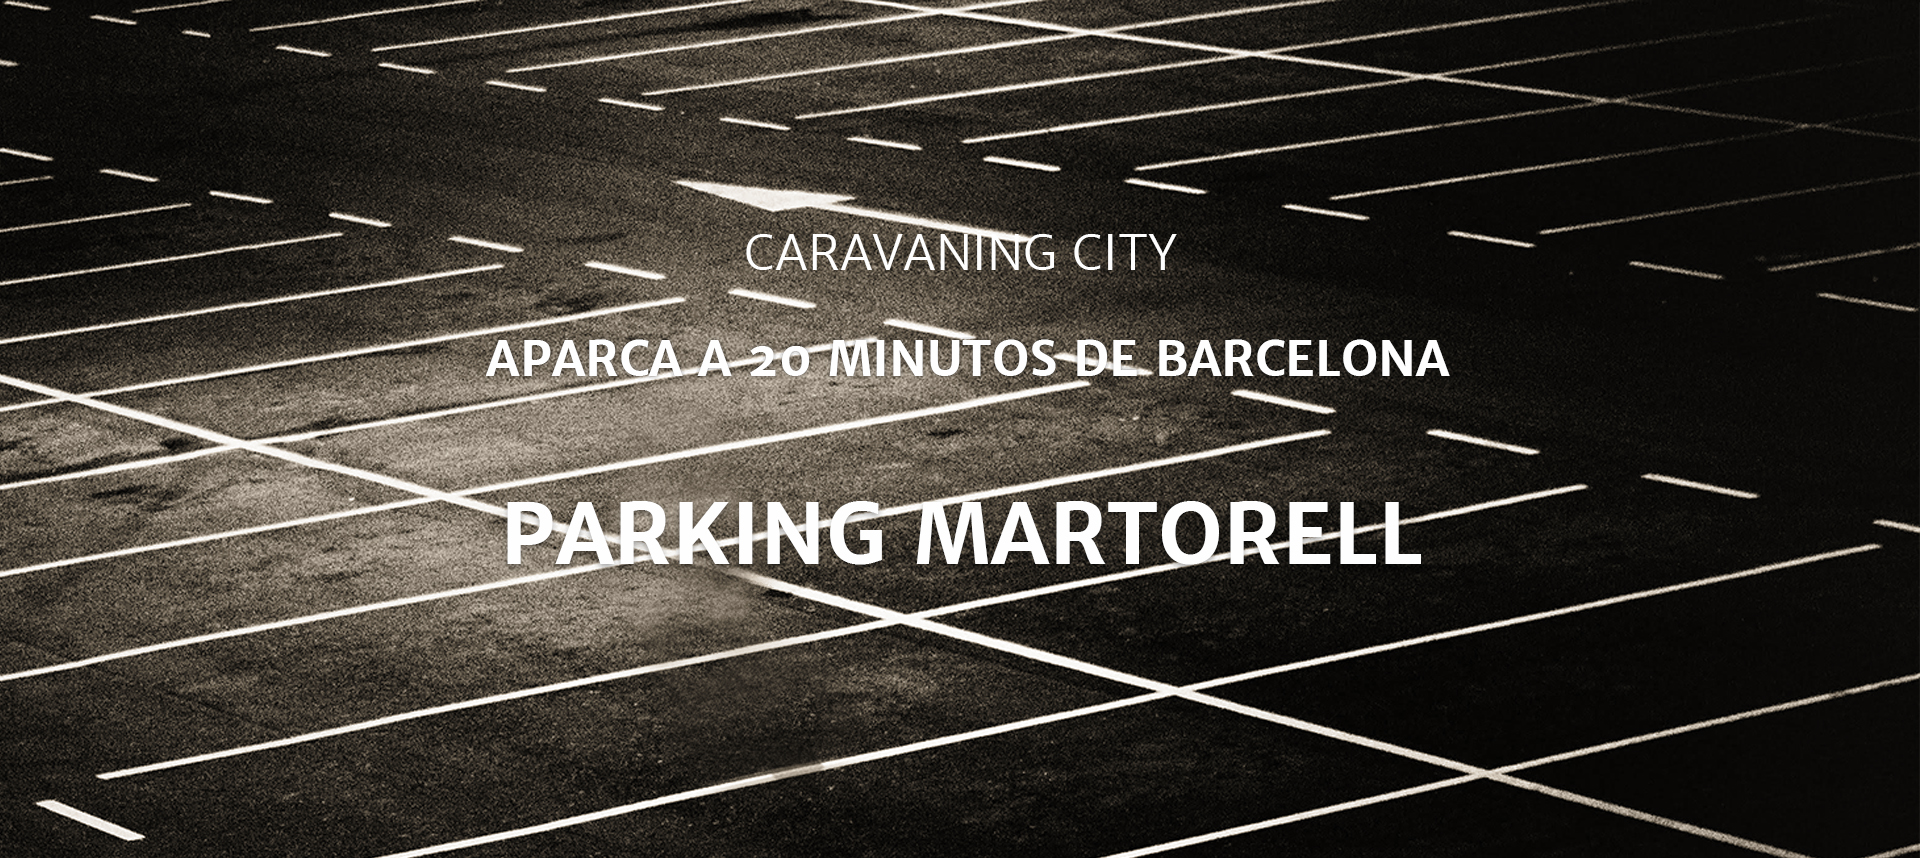 Caravaning City Parking Martorell